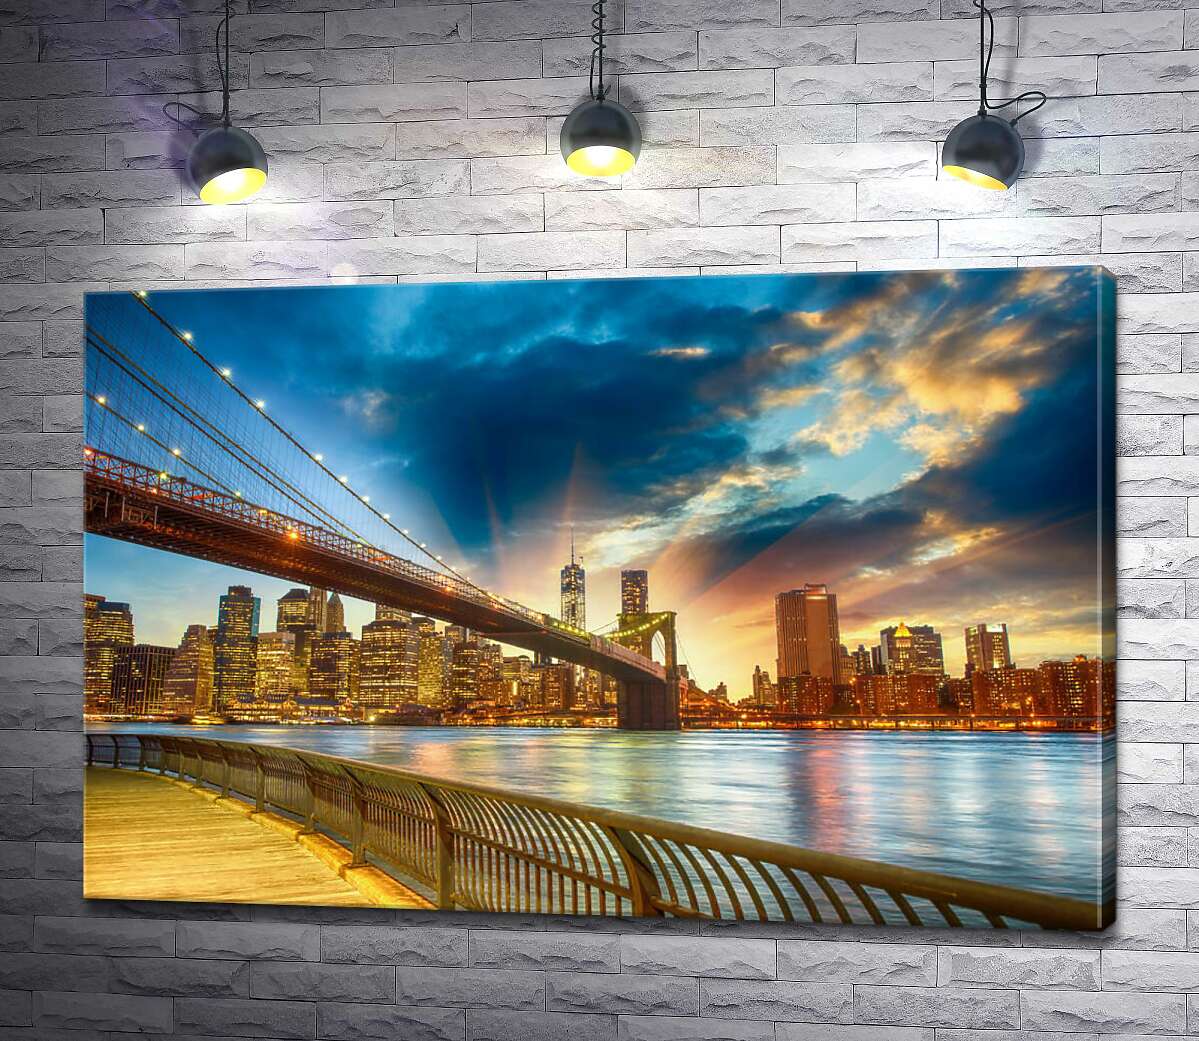 картина Бруклінський міст (Brooklyn Bridge) веде до багатолюдного мегаполісу